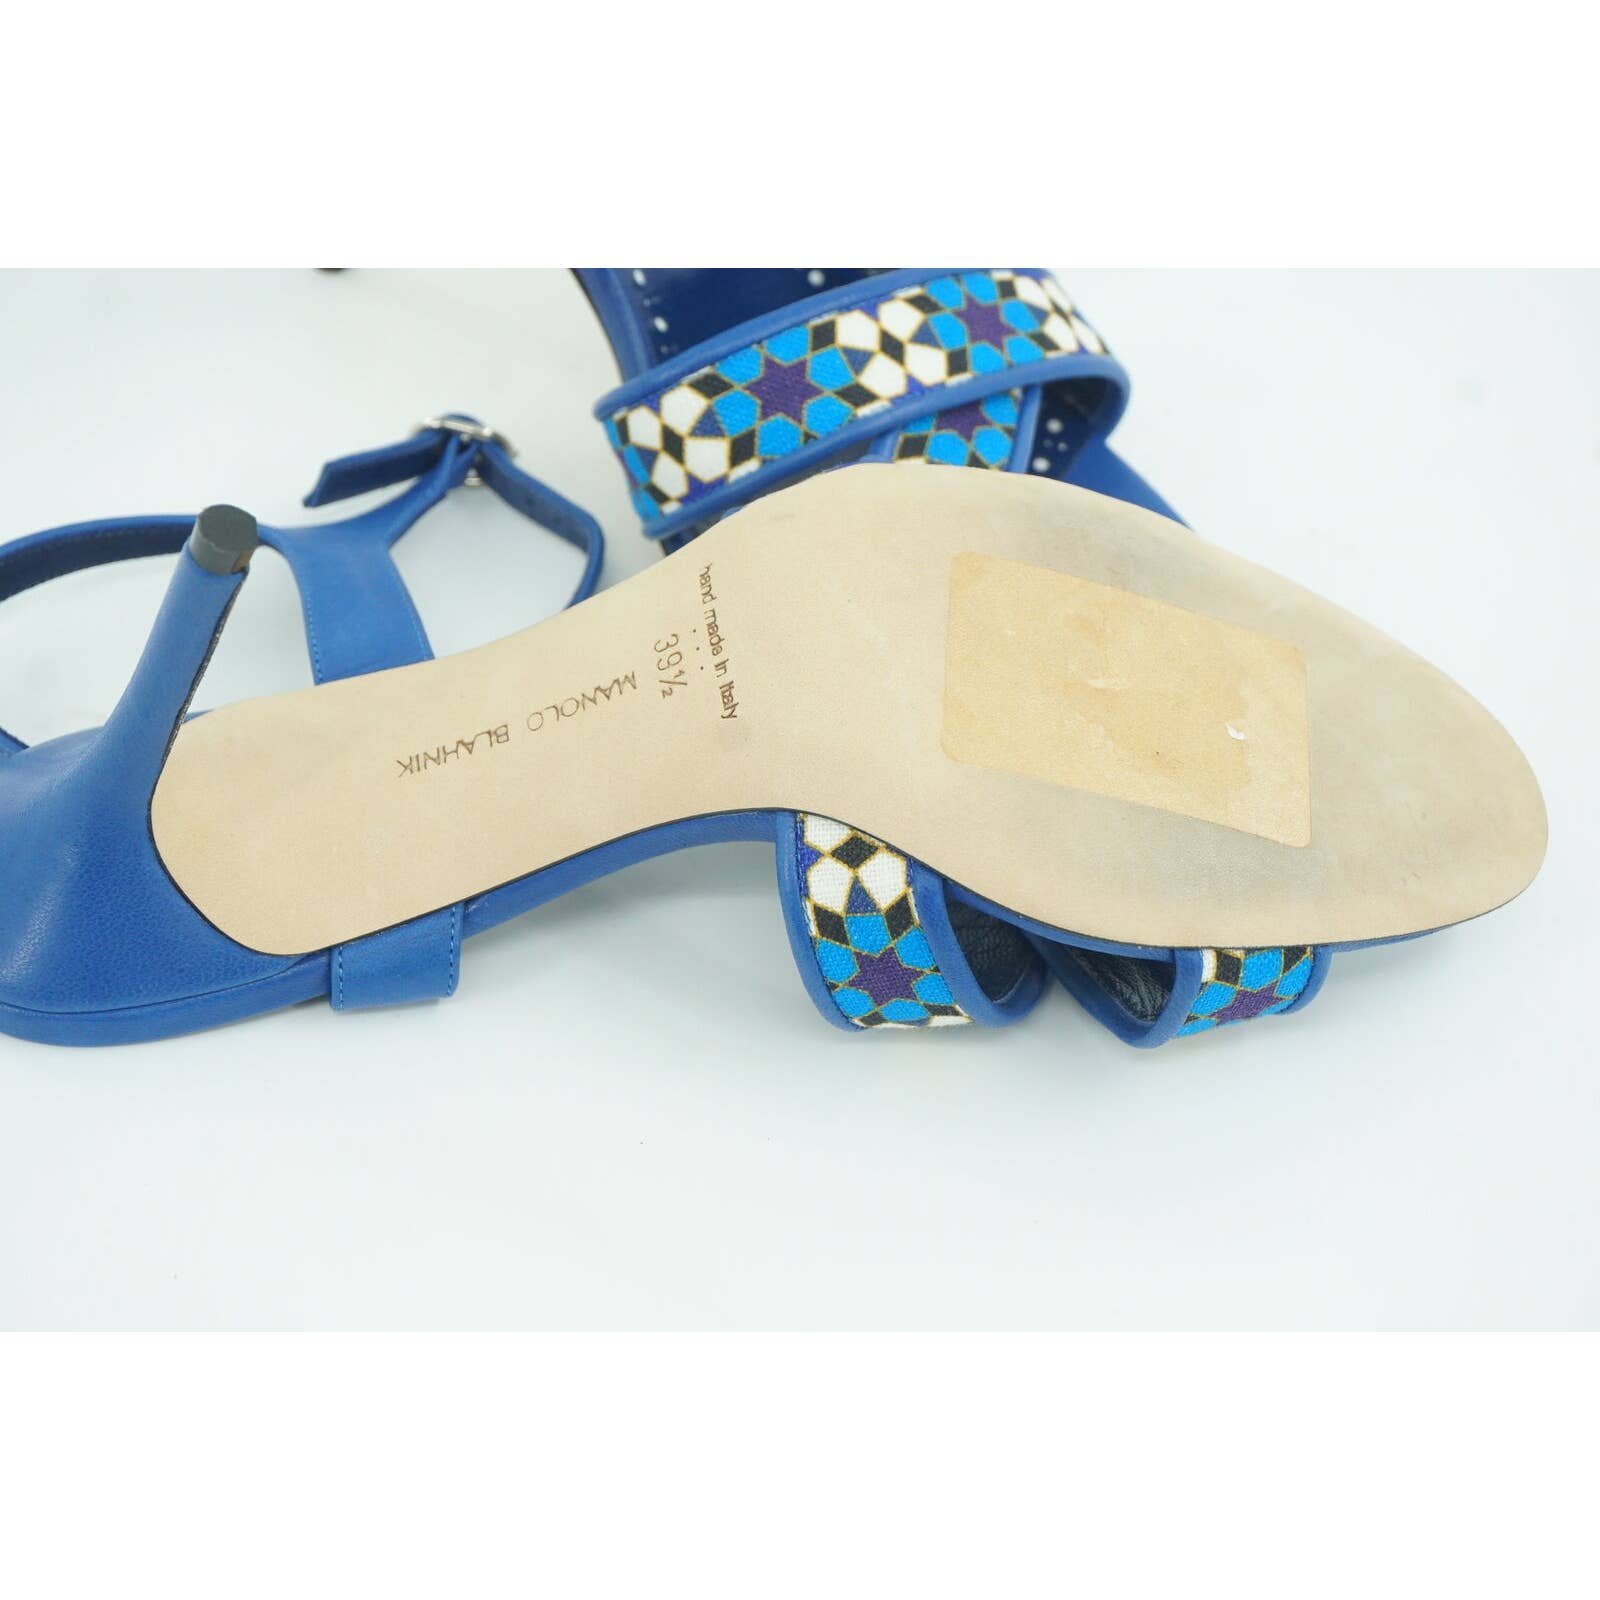 Manolo Blahnik Talitha Linen Strap Blue Floral Sandals size 39.5 Ankle $1026